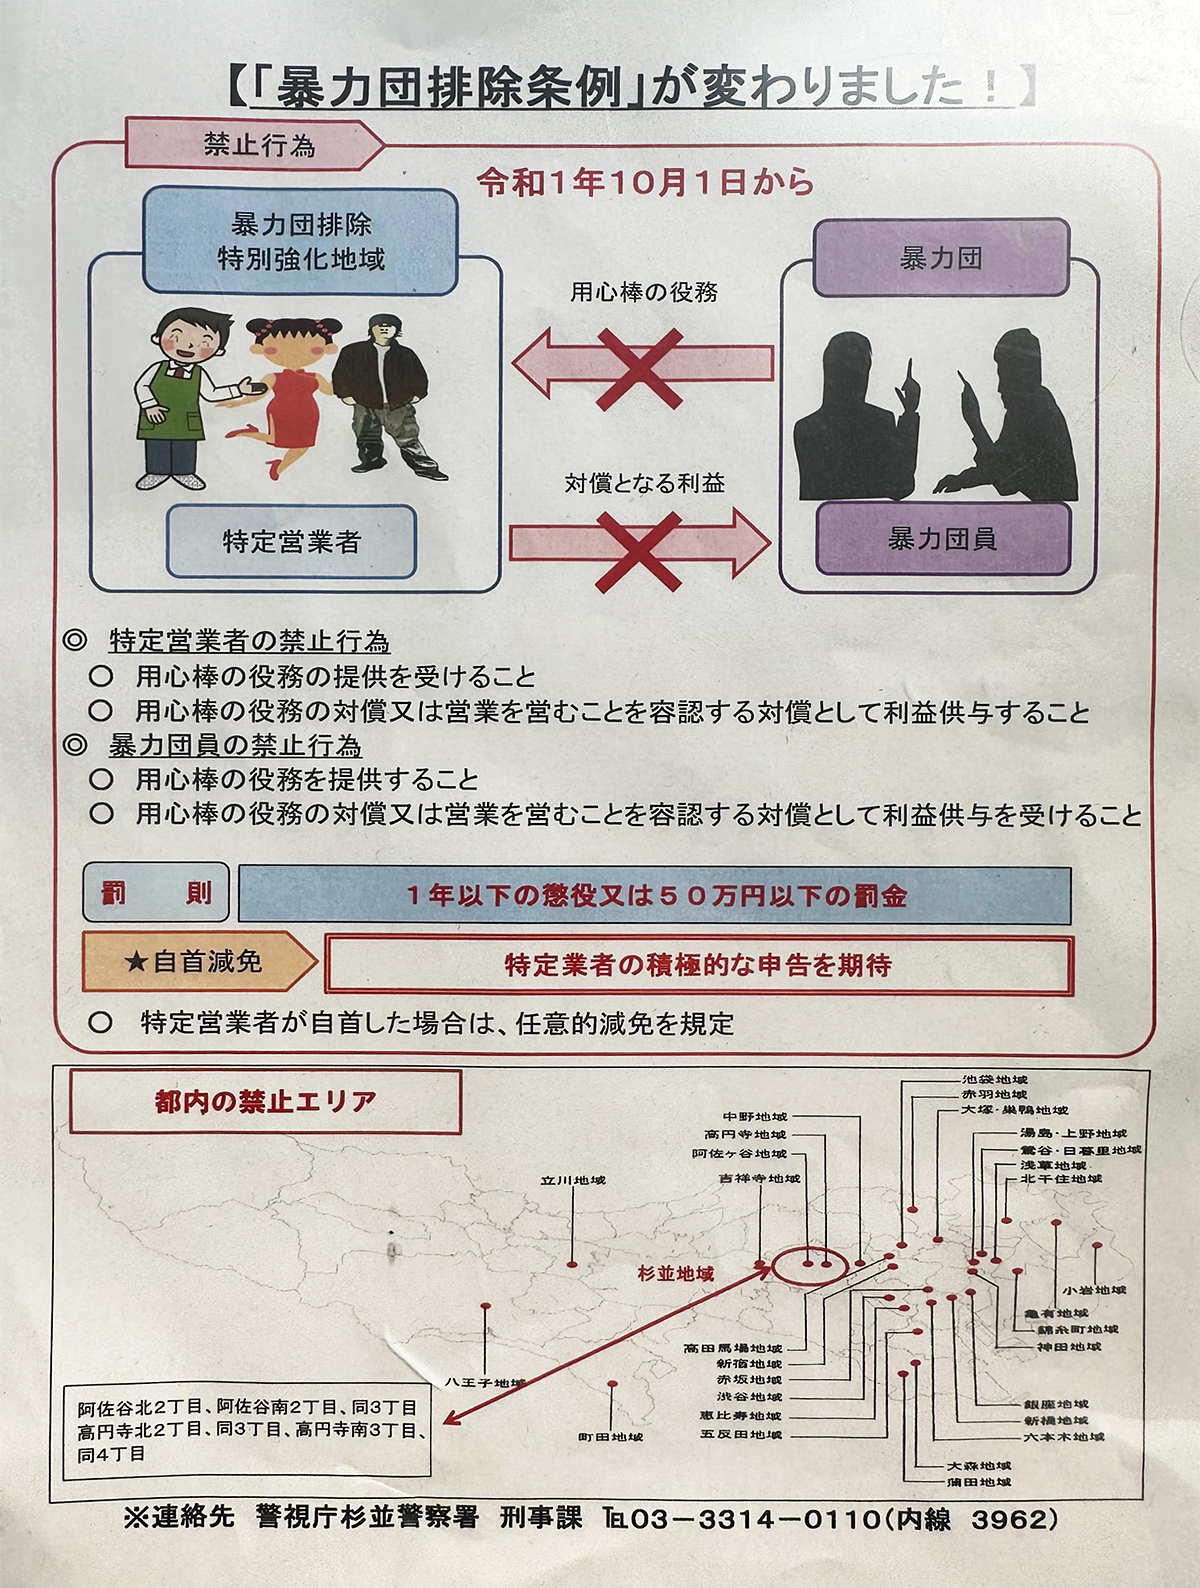 東京都暴力団排除条例が改正されました